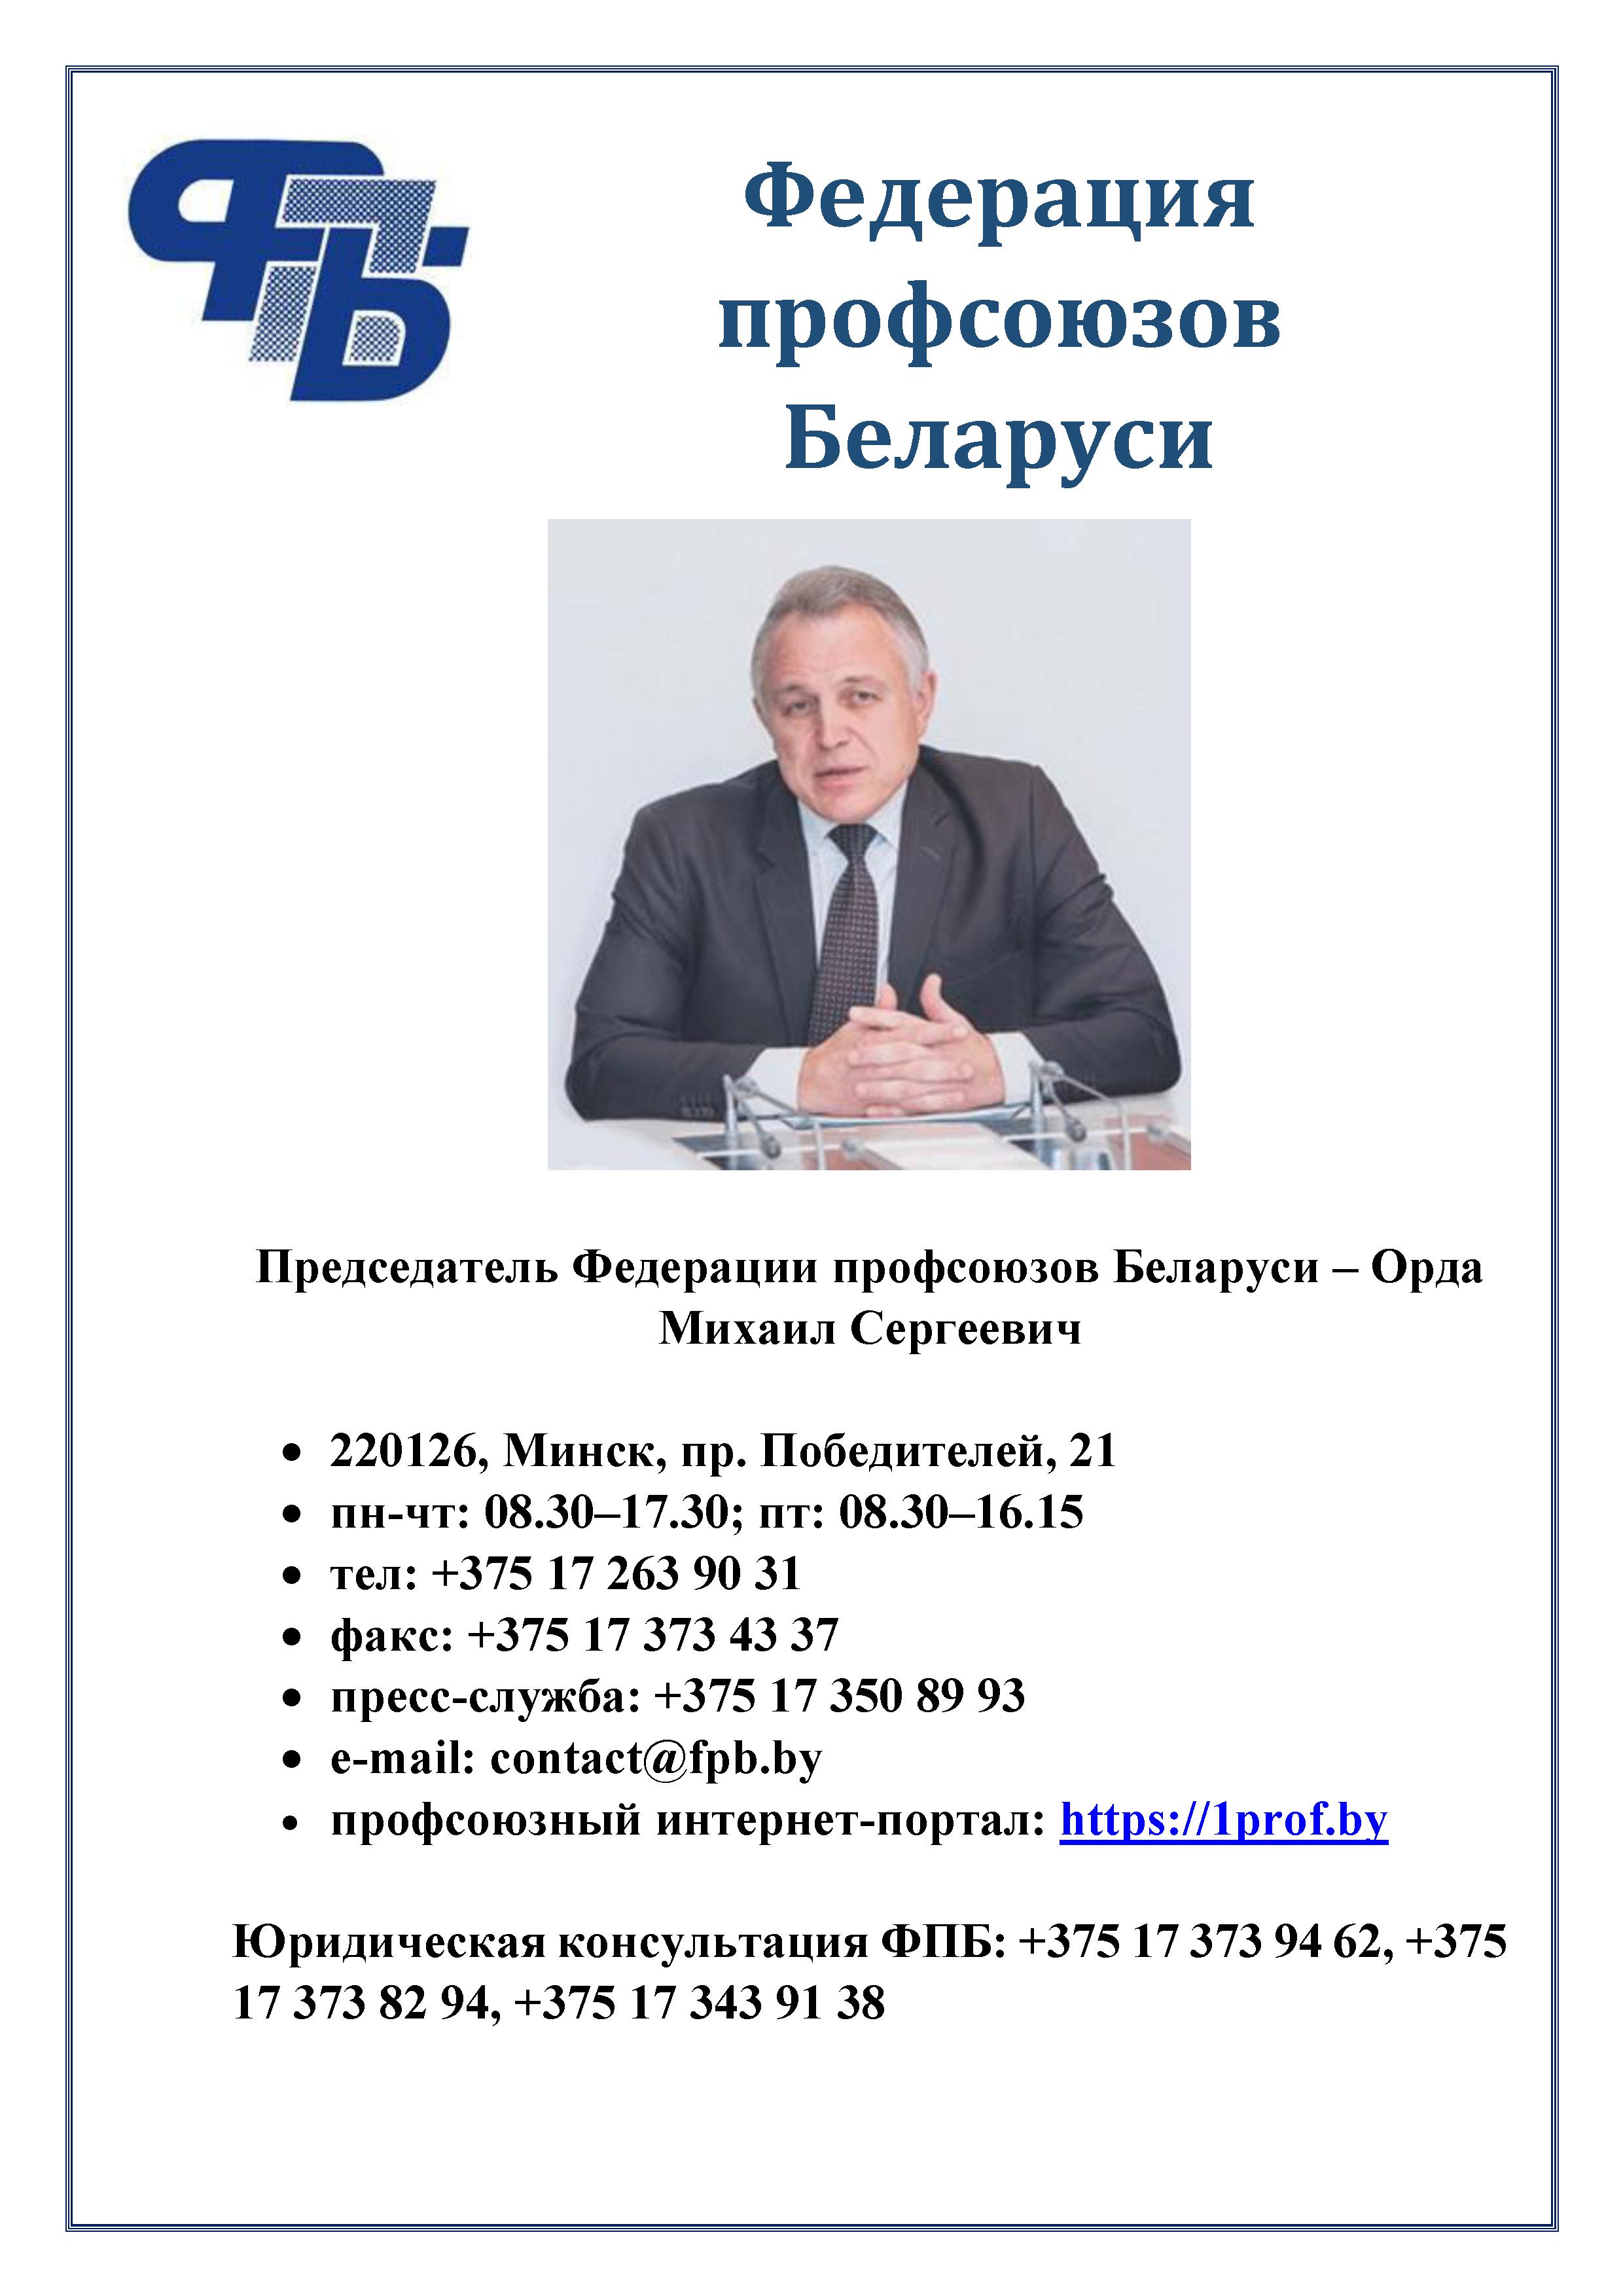 1 Информация о Федерации профсоюзов Беларуси1